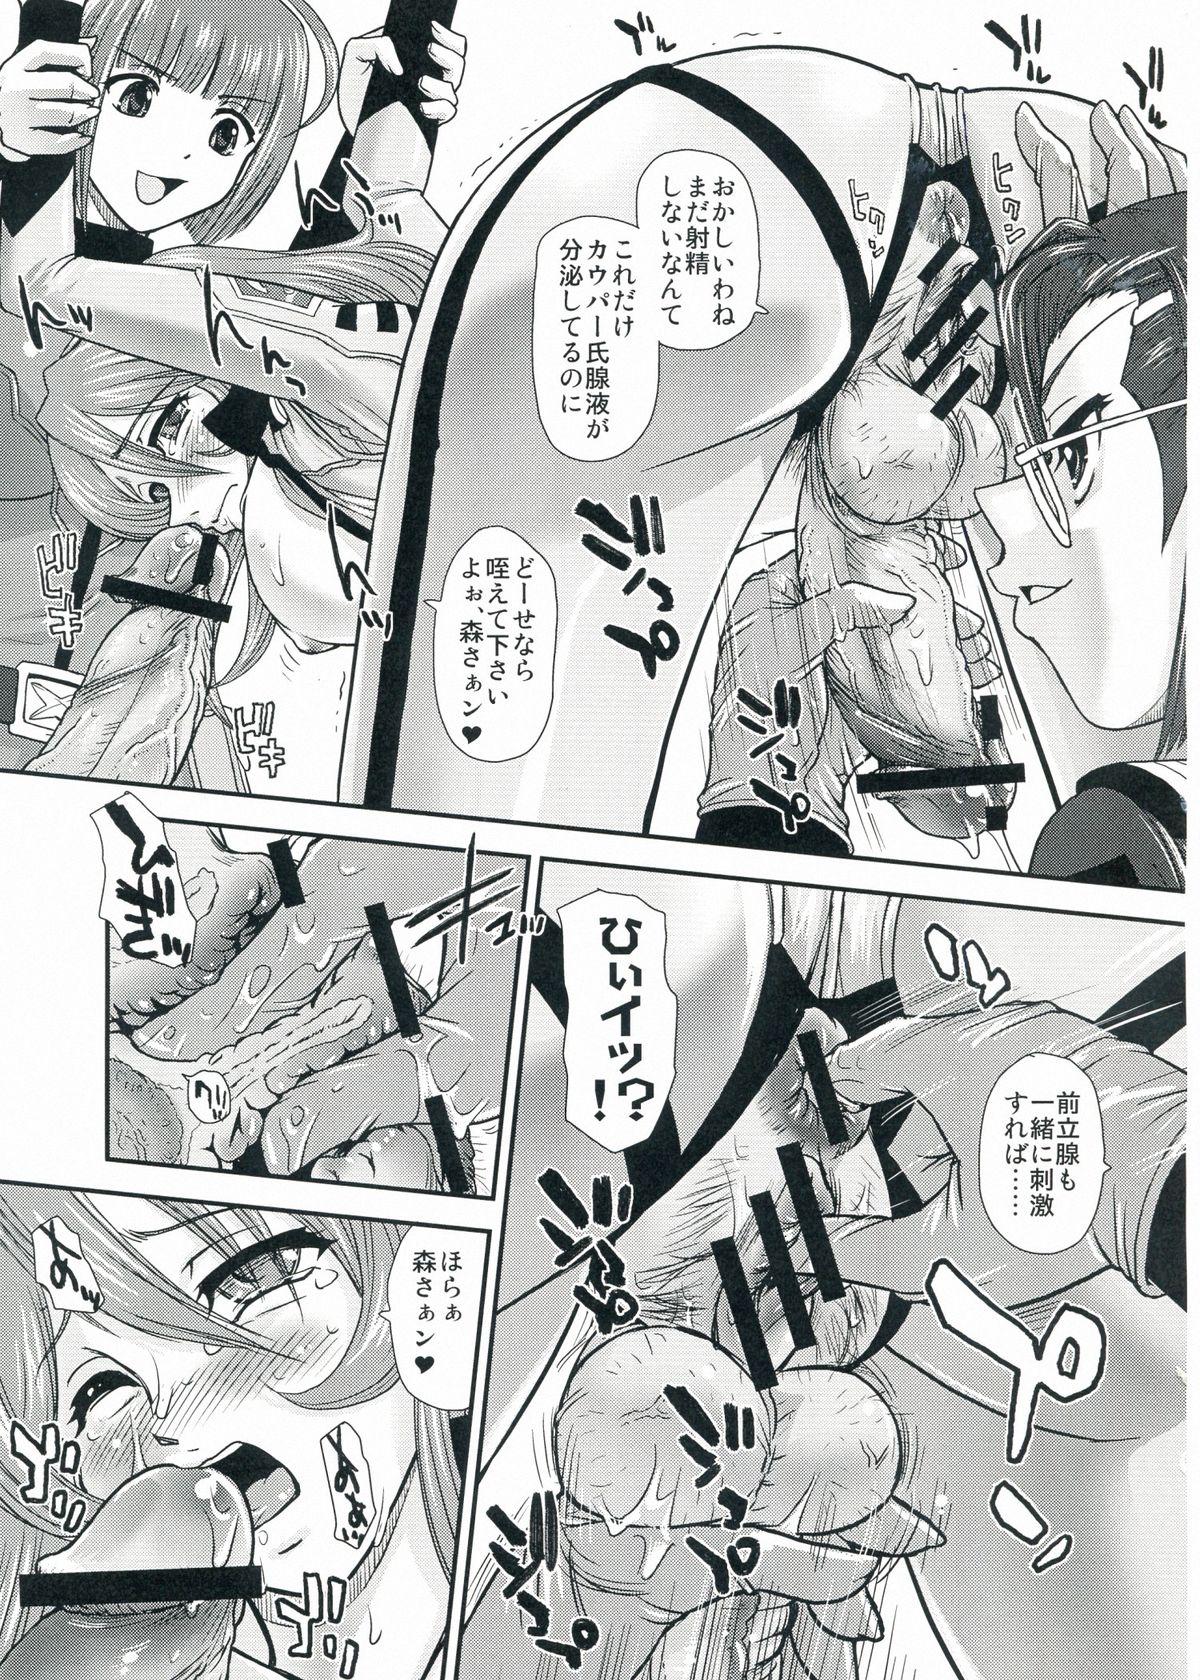 Pervert YAMATO2199 Alternative - Space battleship yamato Pussyfucking - Page 9